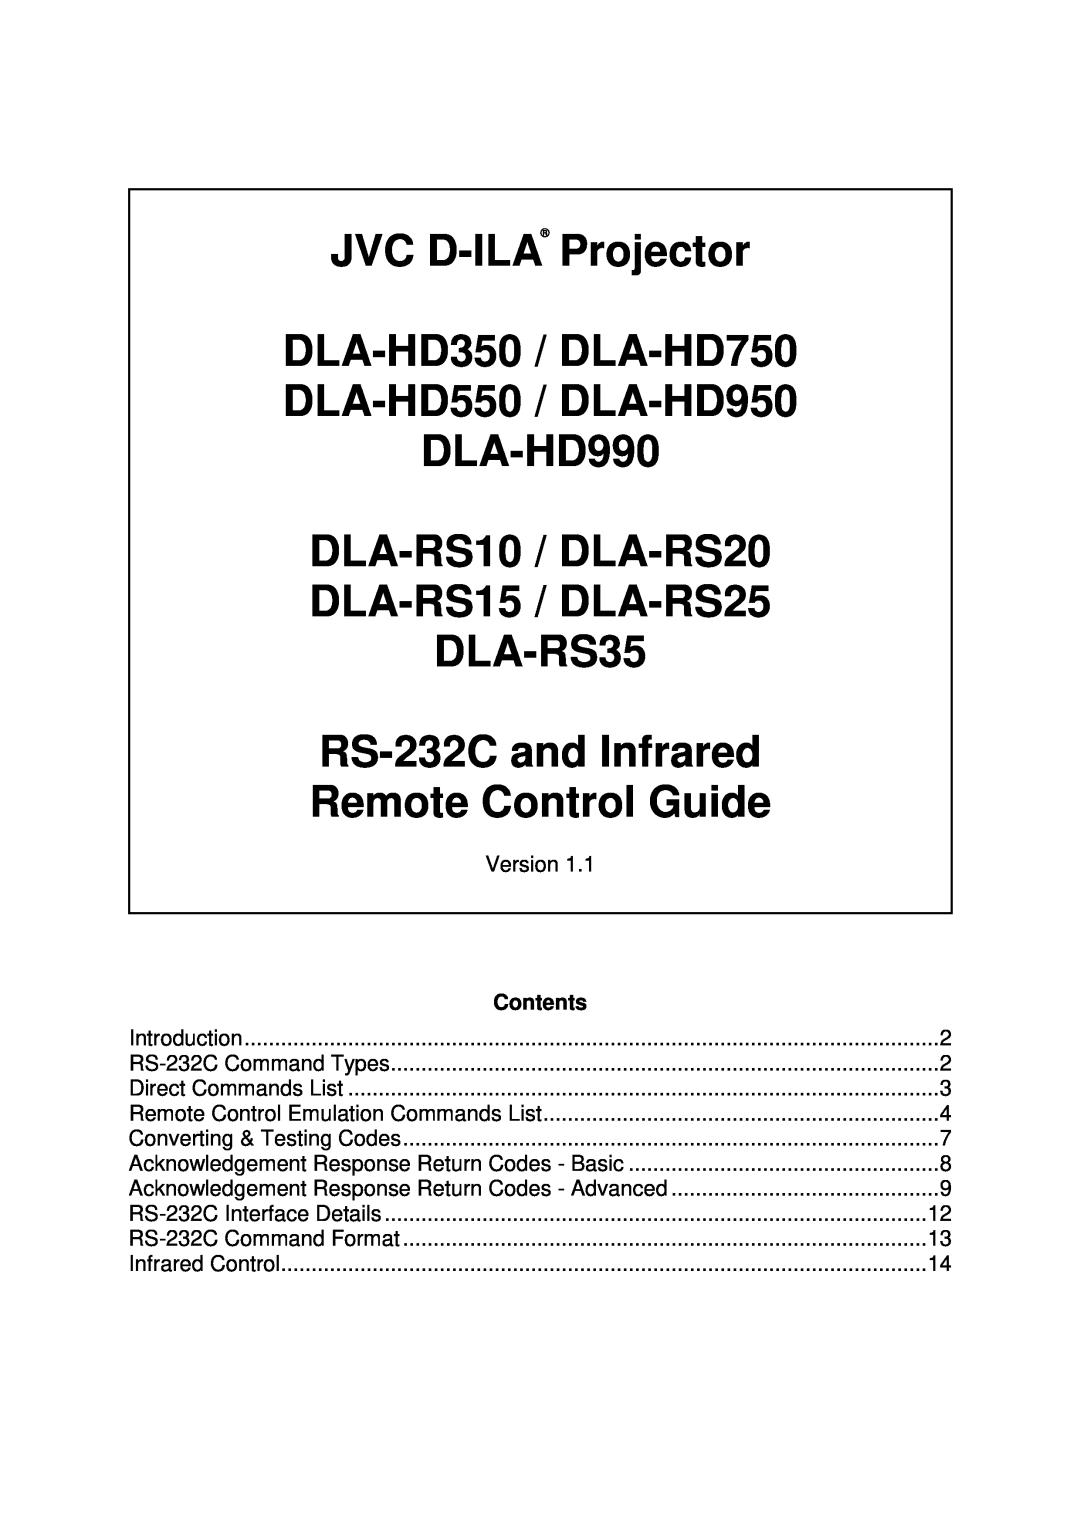 JVC warranty DLA-HD950 DLA-HD550, Full HD D-ILA Front Projectors 